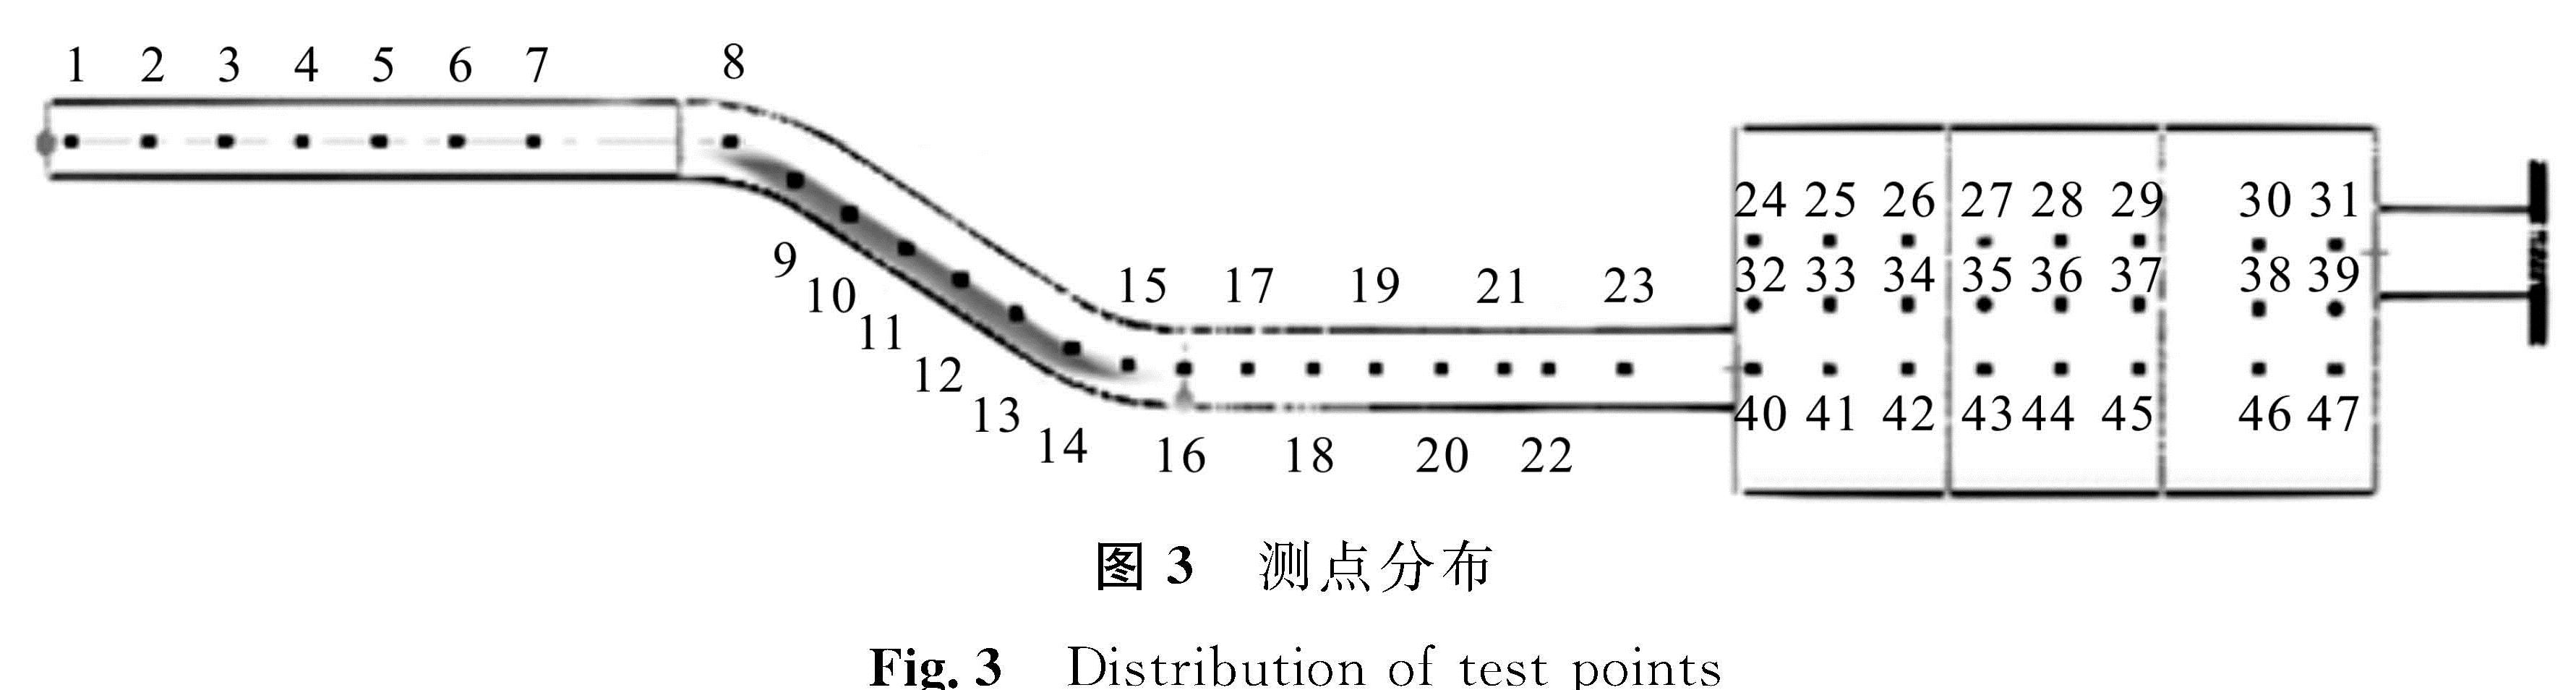 图3 测点分布<br/>Fig.3 Distribution of test points